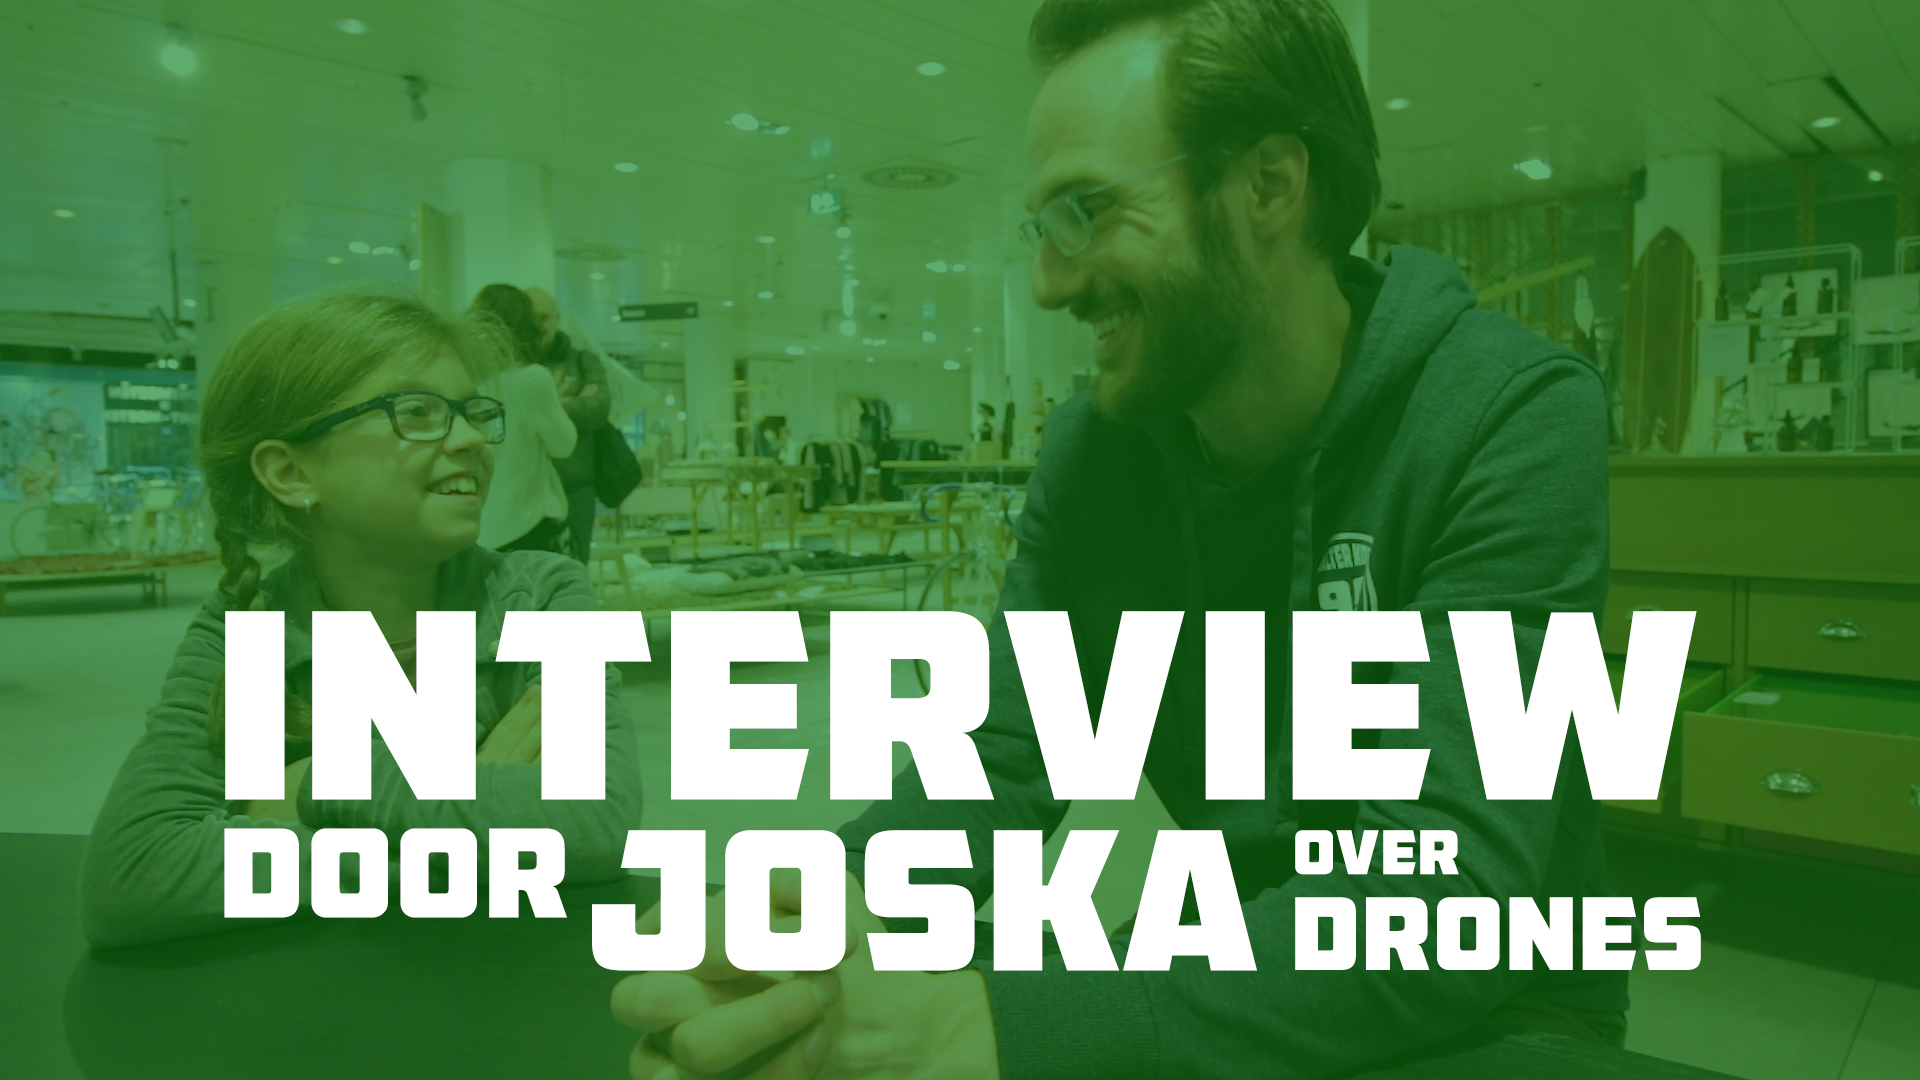 interview over Drone Racing door joska